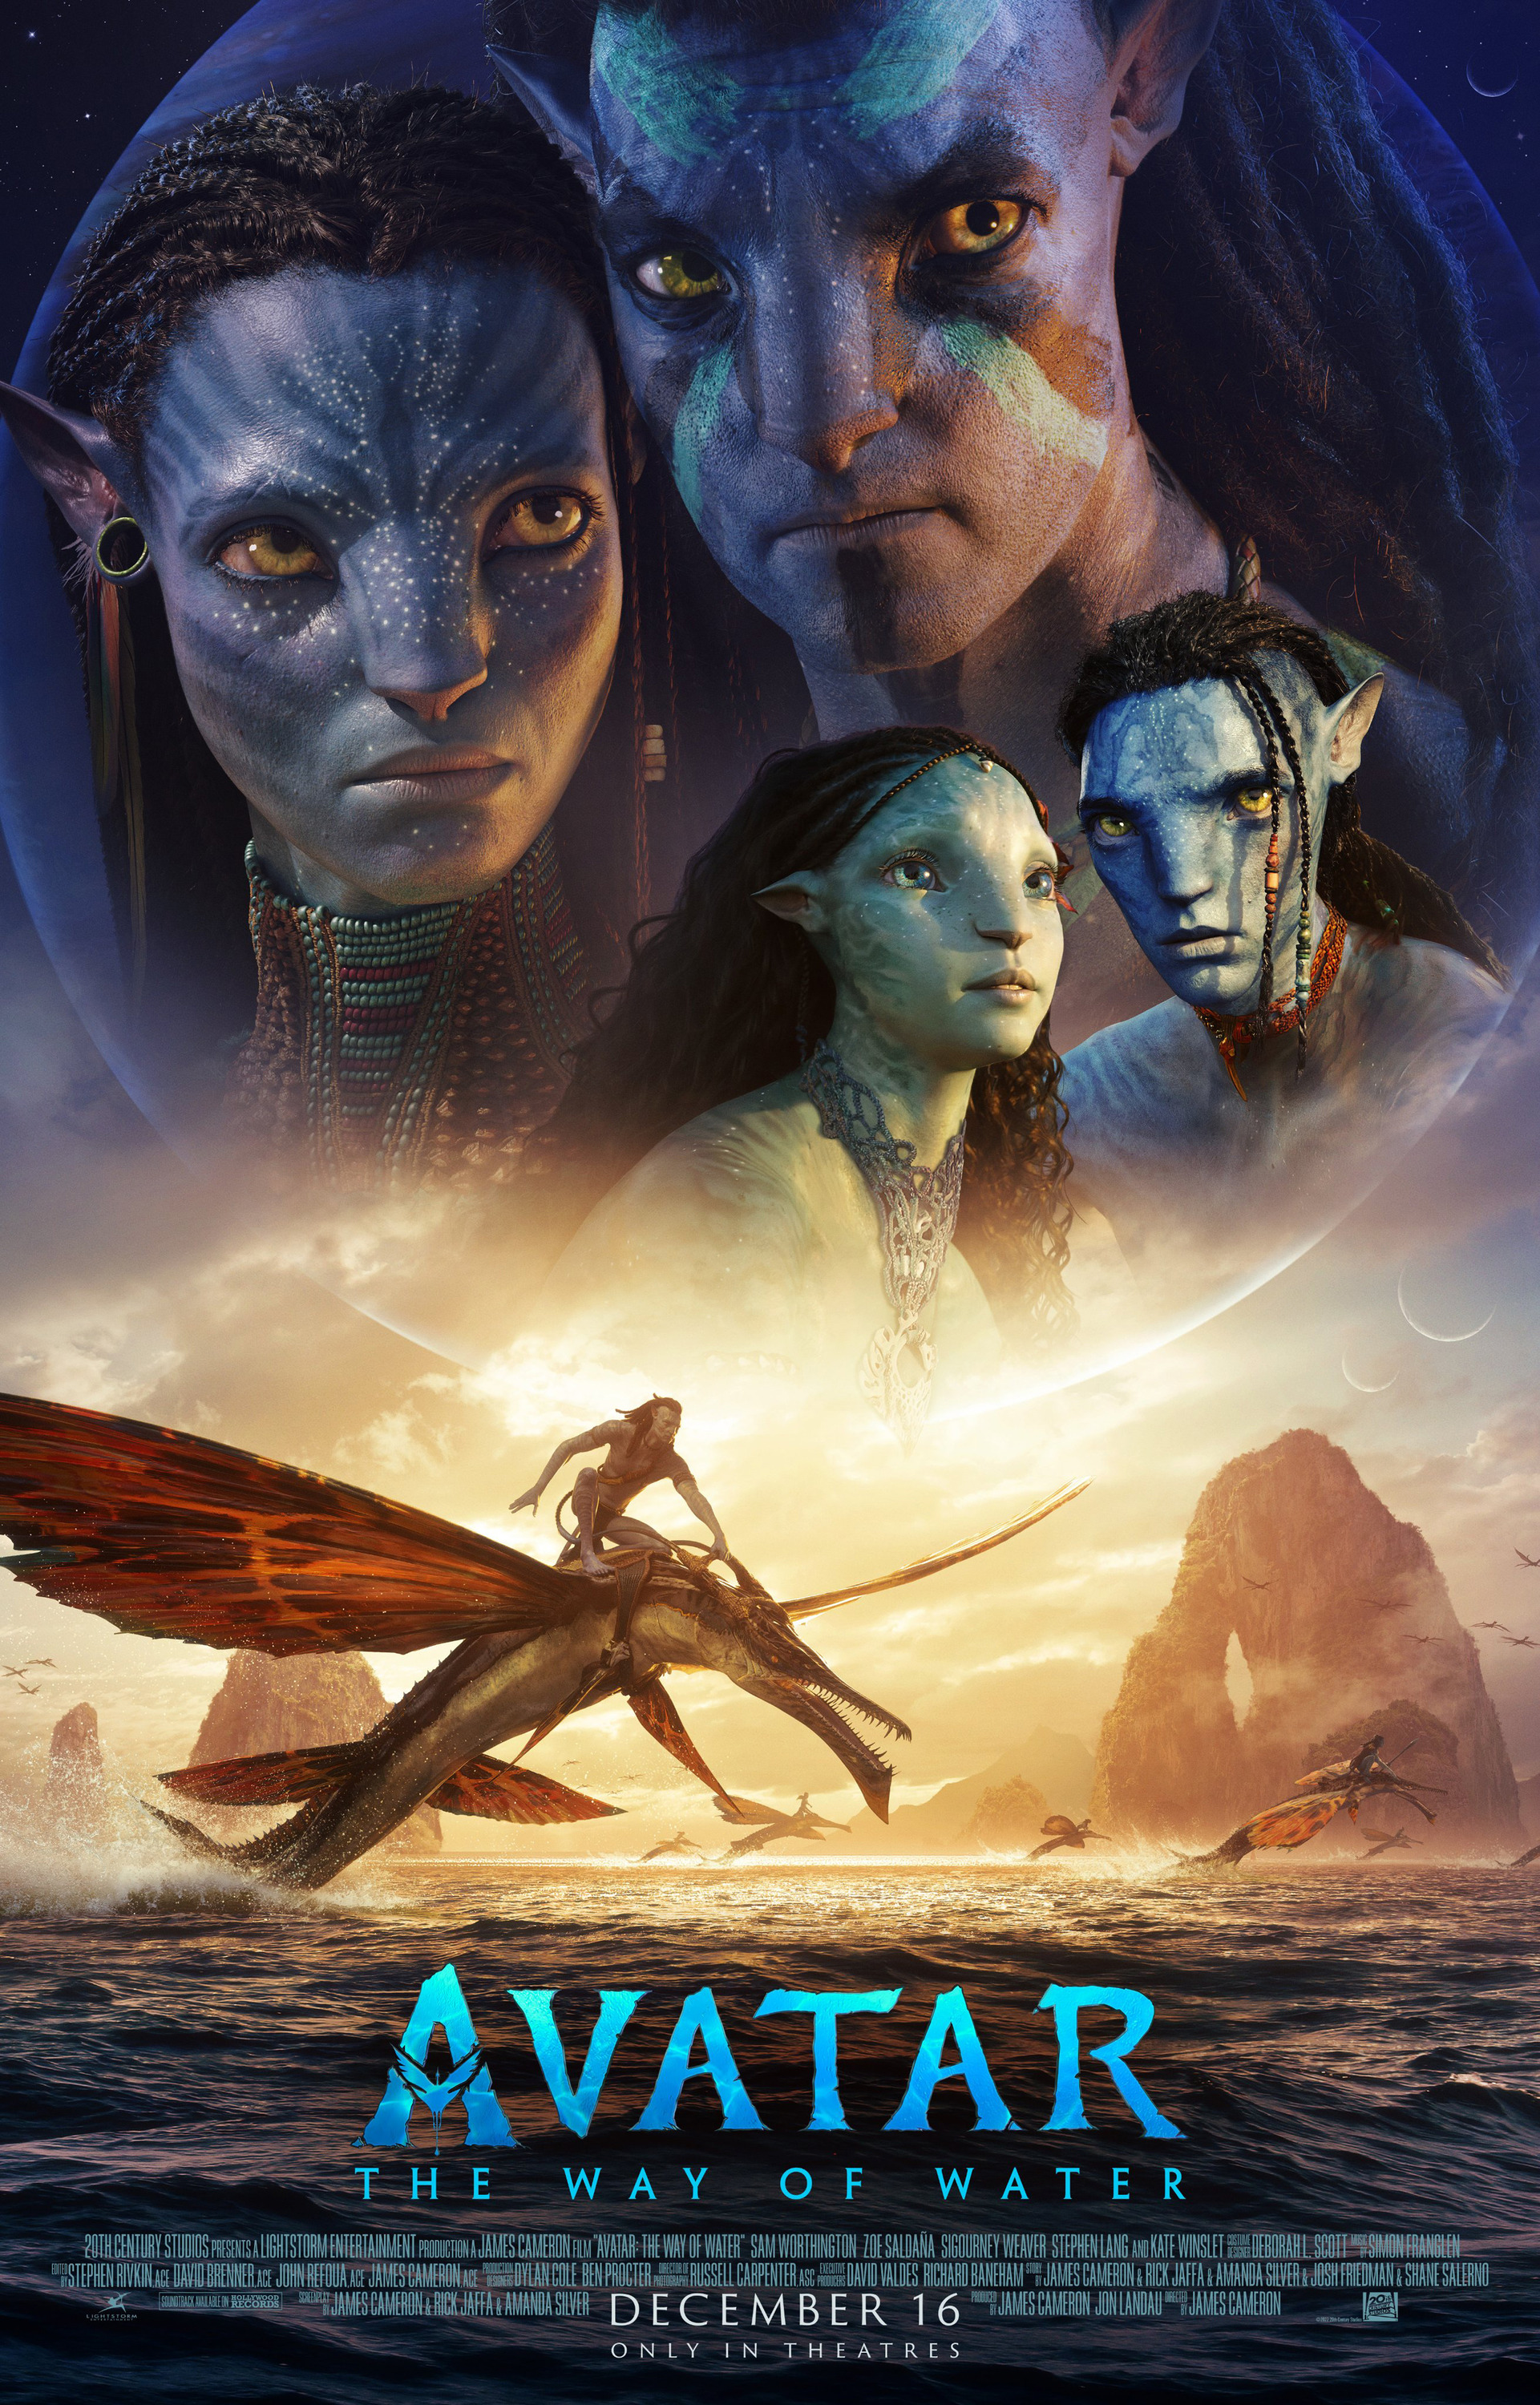 Cộng đồng fandom Avatar phát triển mạnh mẽ vào năm 2024, đem lại cho những người yêu thích series phim này nhiều cơ hội để chia sẻ và kết nối với nhau. Bạn có thể tham gia vào cộng đồng này để trao đổi, chia sẻ và khám phá thế giới Avatar.